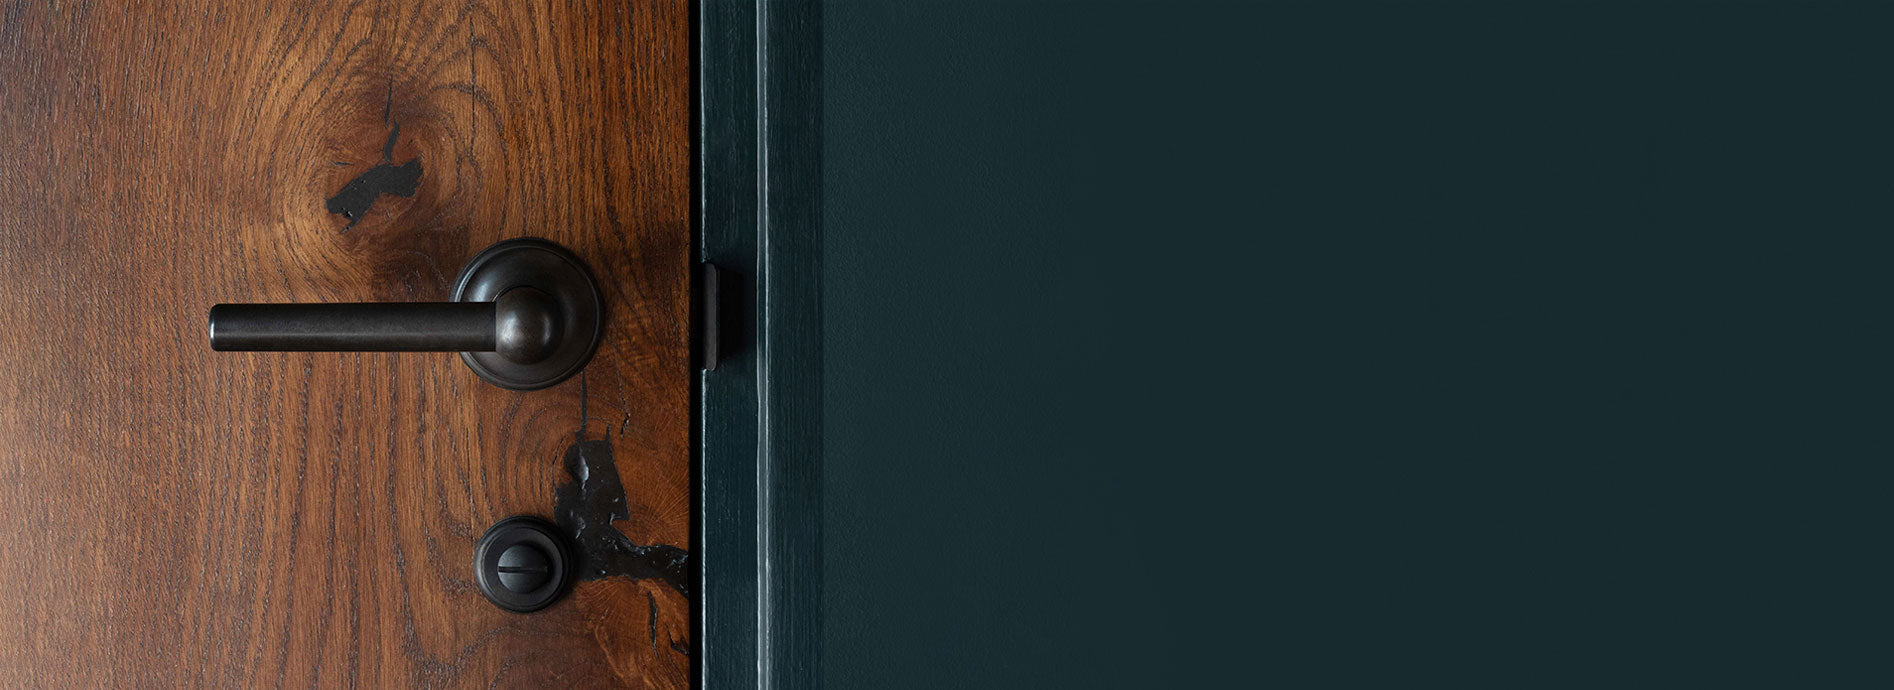 Bronze poplar mortice door handle on wooden door